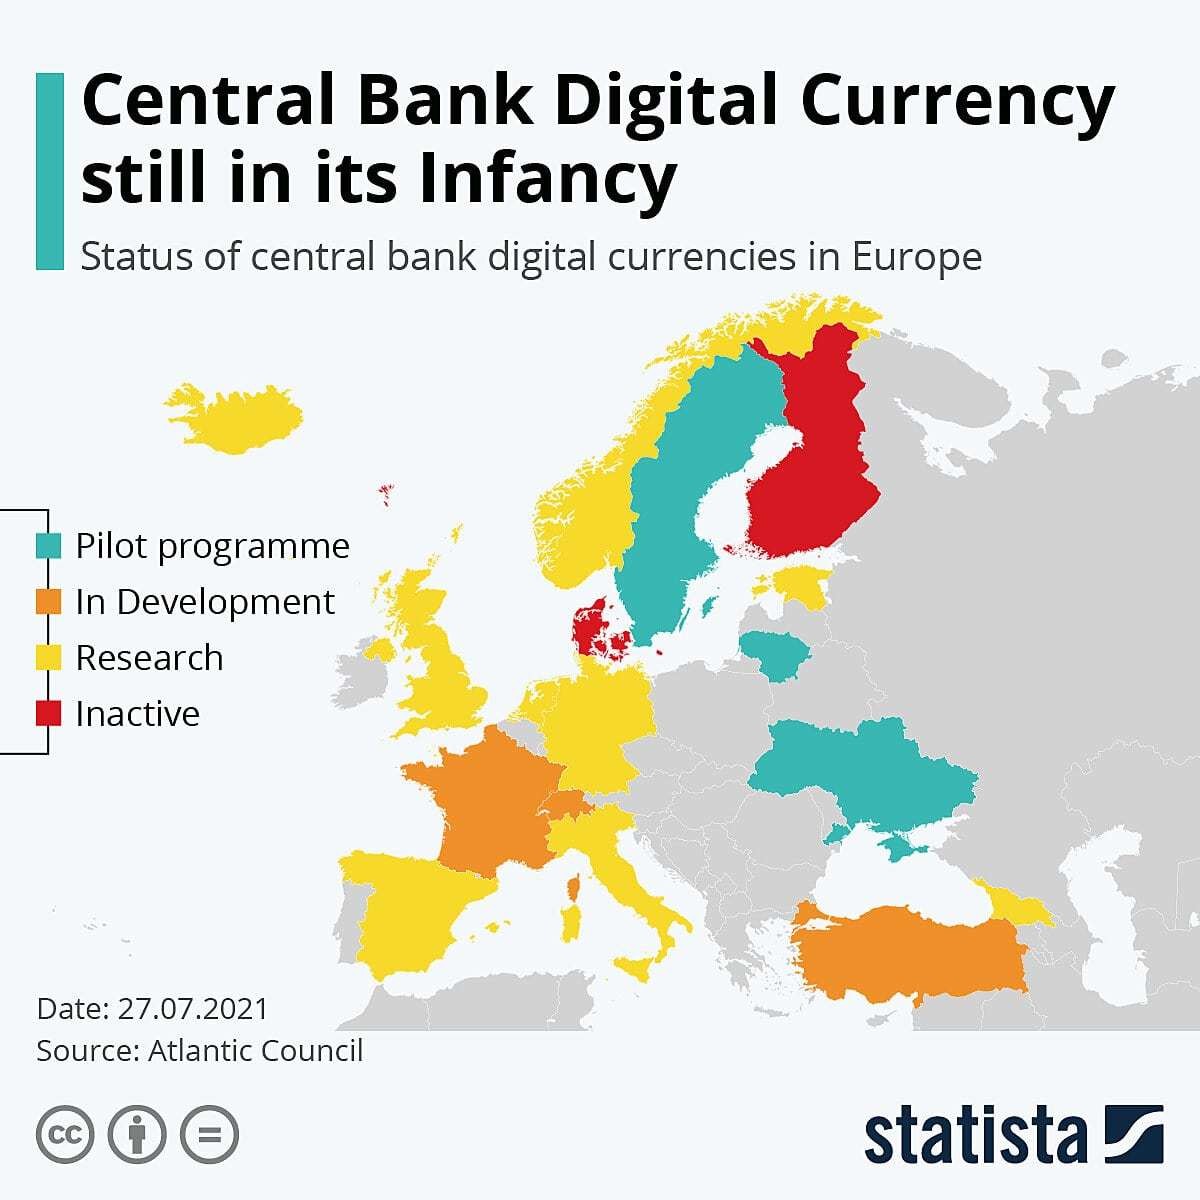 哪些欧洲国家正在开发数字货币?